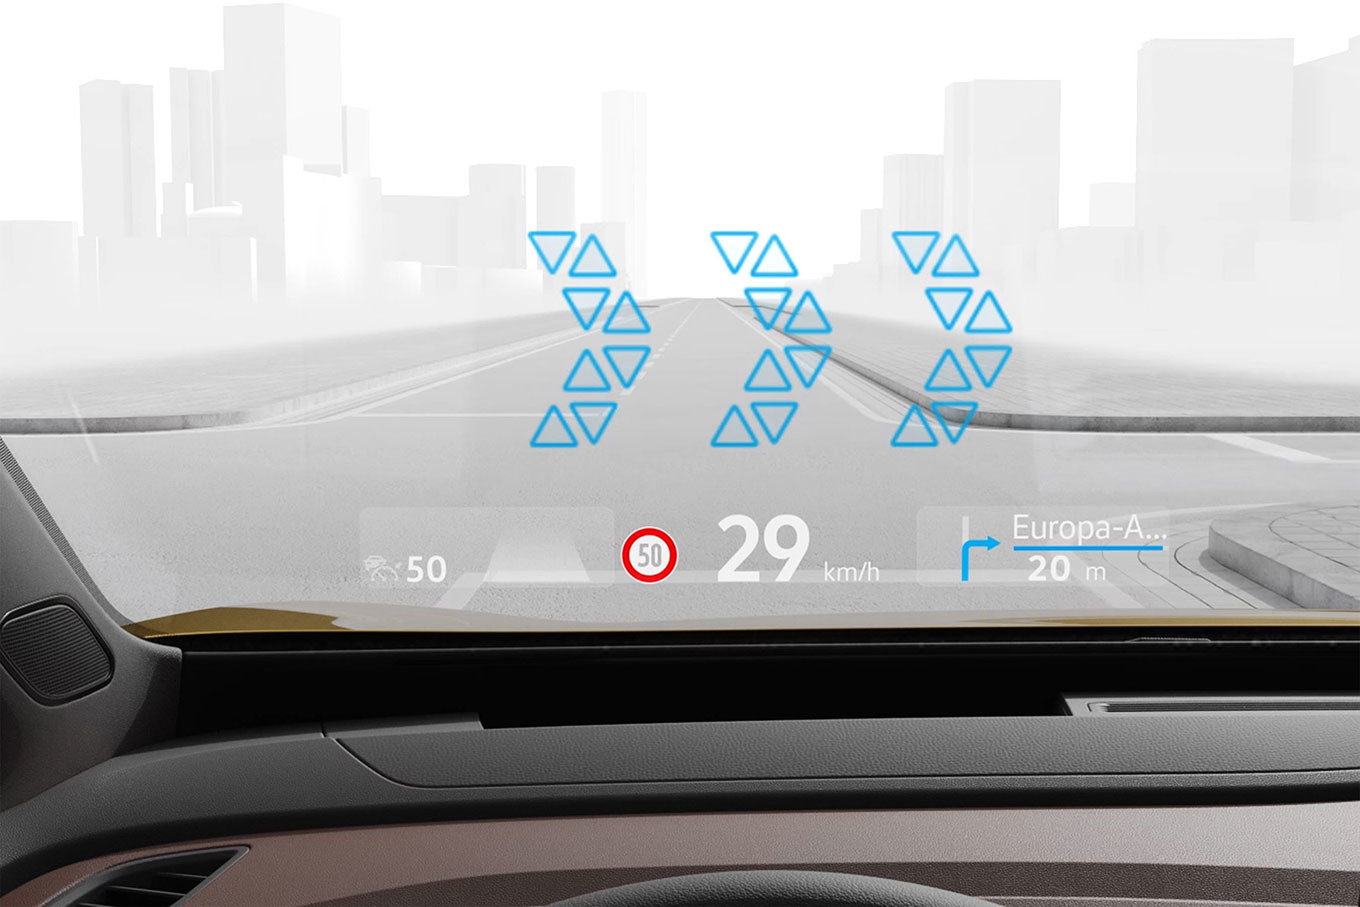 Проекційні дисплеї Volkswagen покажуть небезпеки на дорозі